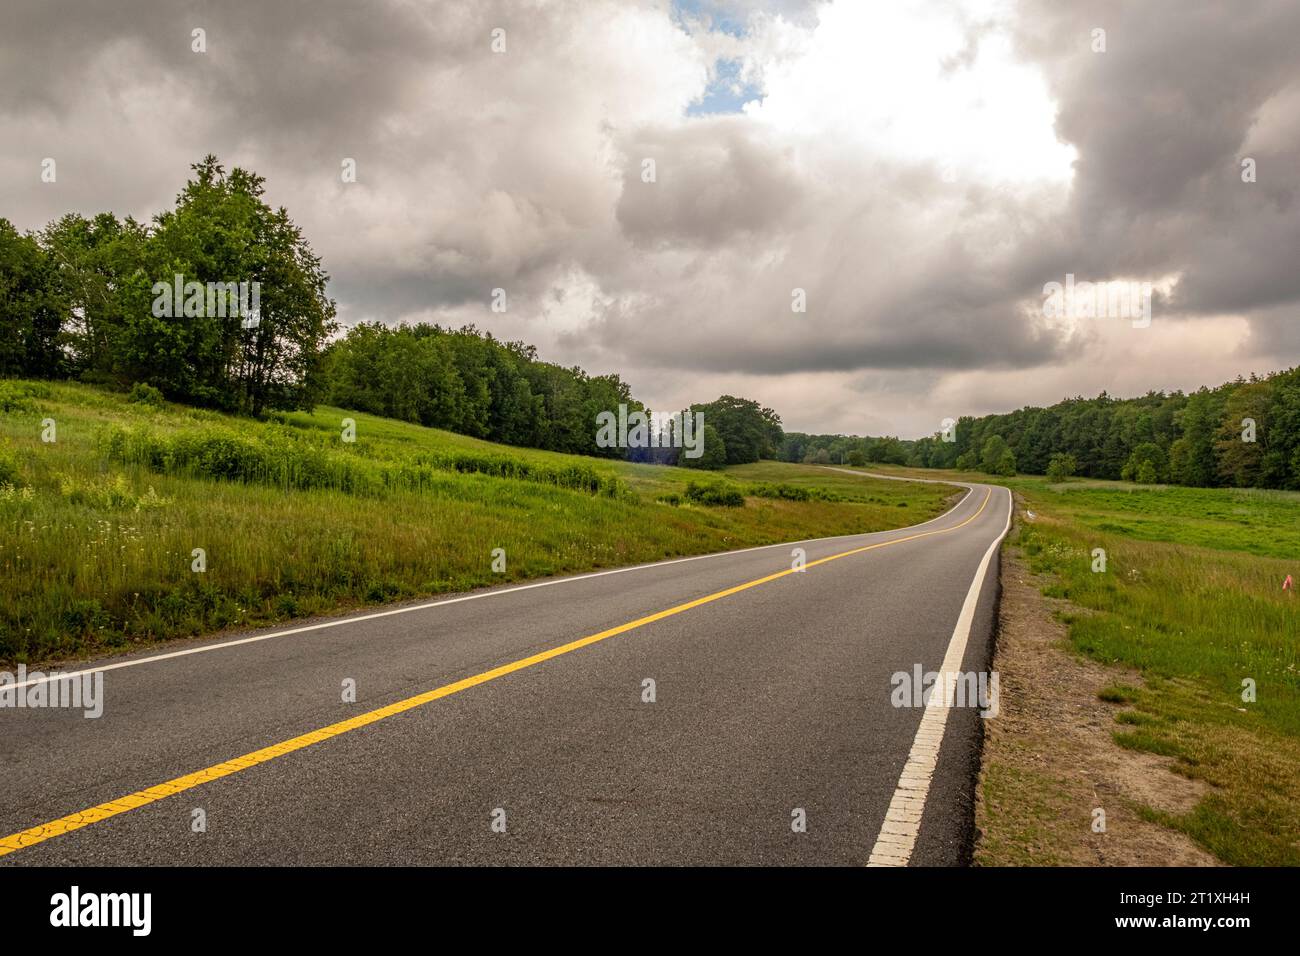 Las nubes de tormenta se ciernen sobre la carretera en Templeton rural, Massachusetts Foto de stock